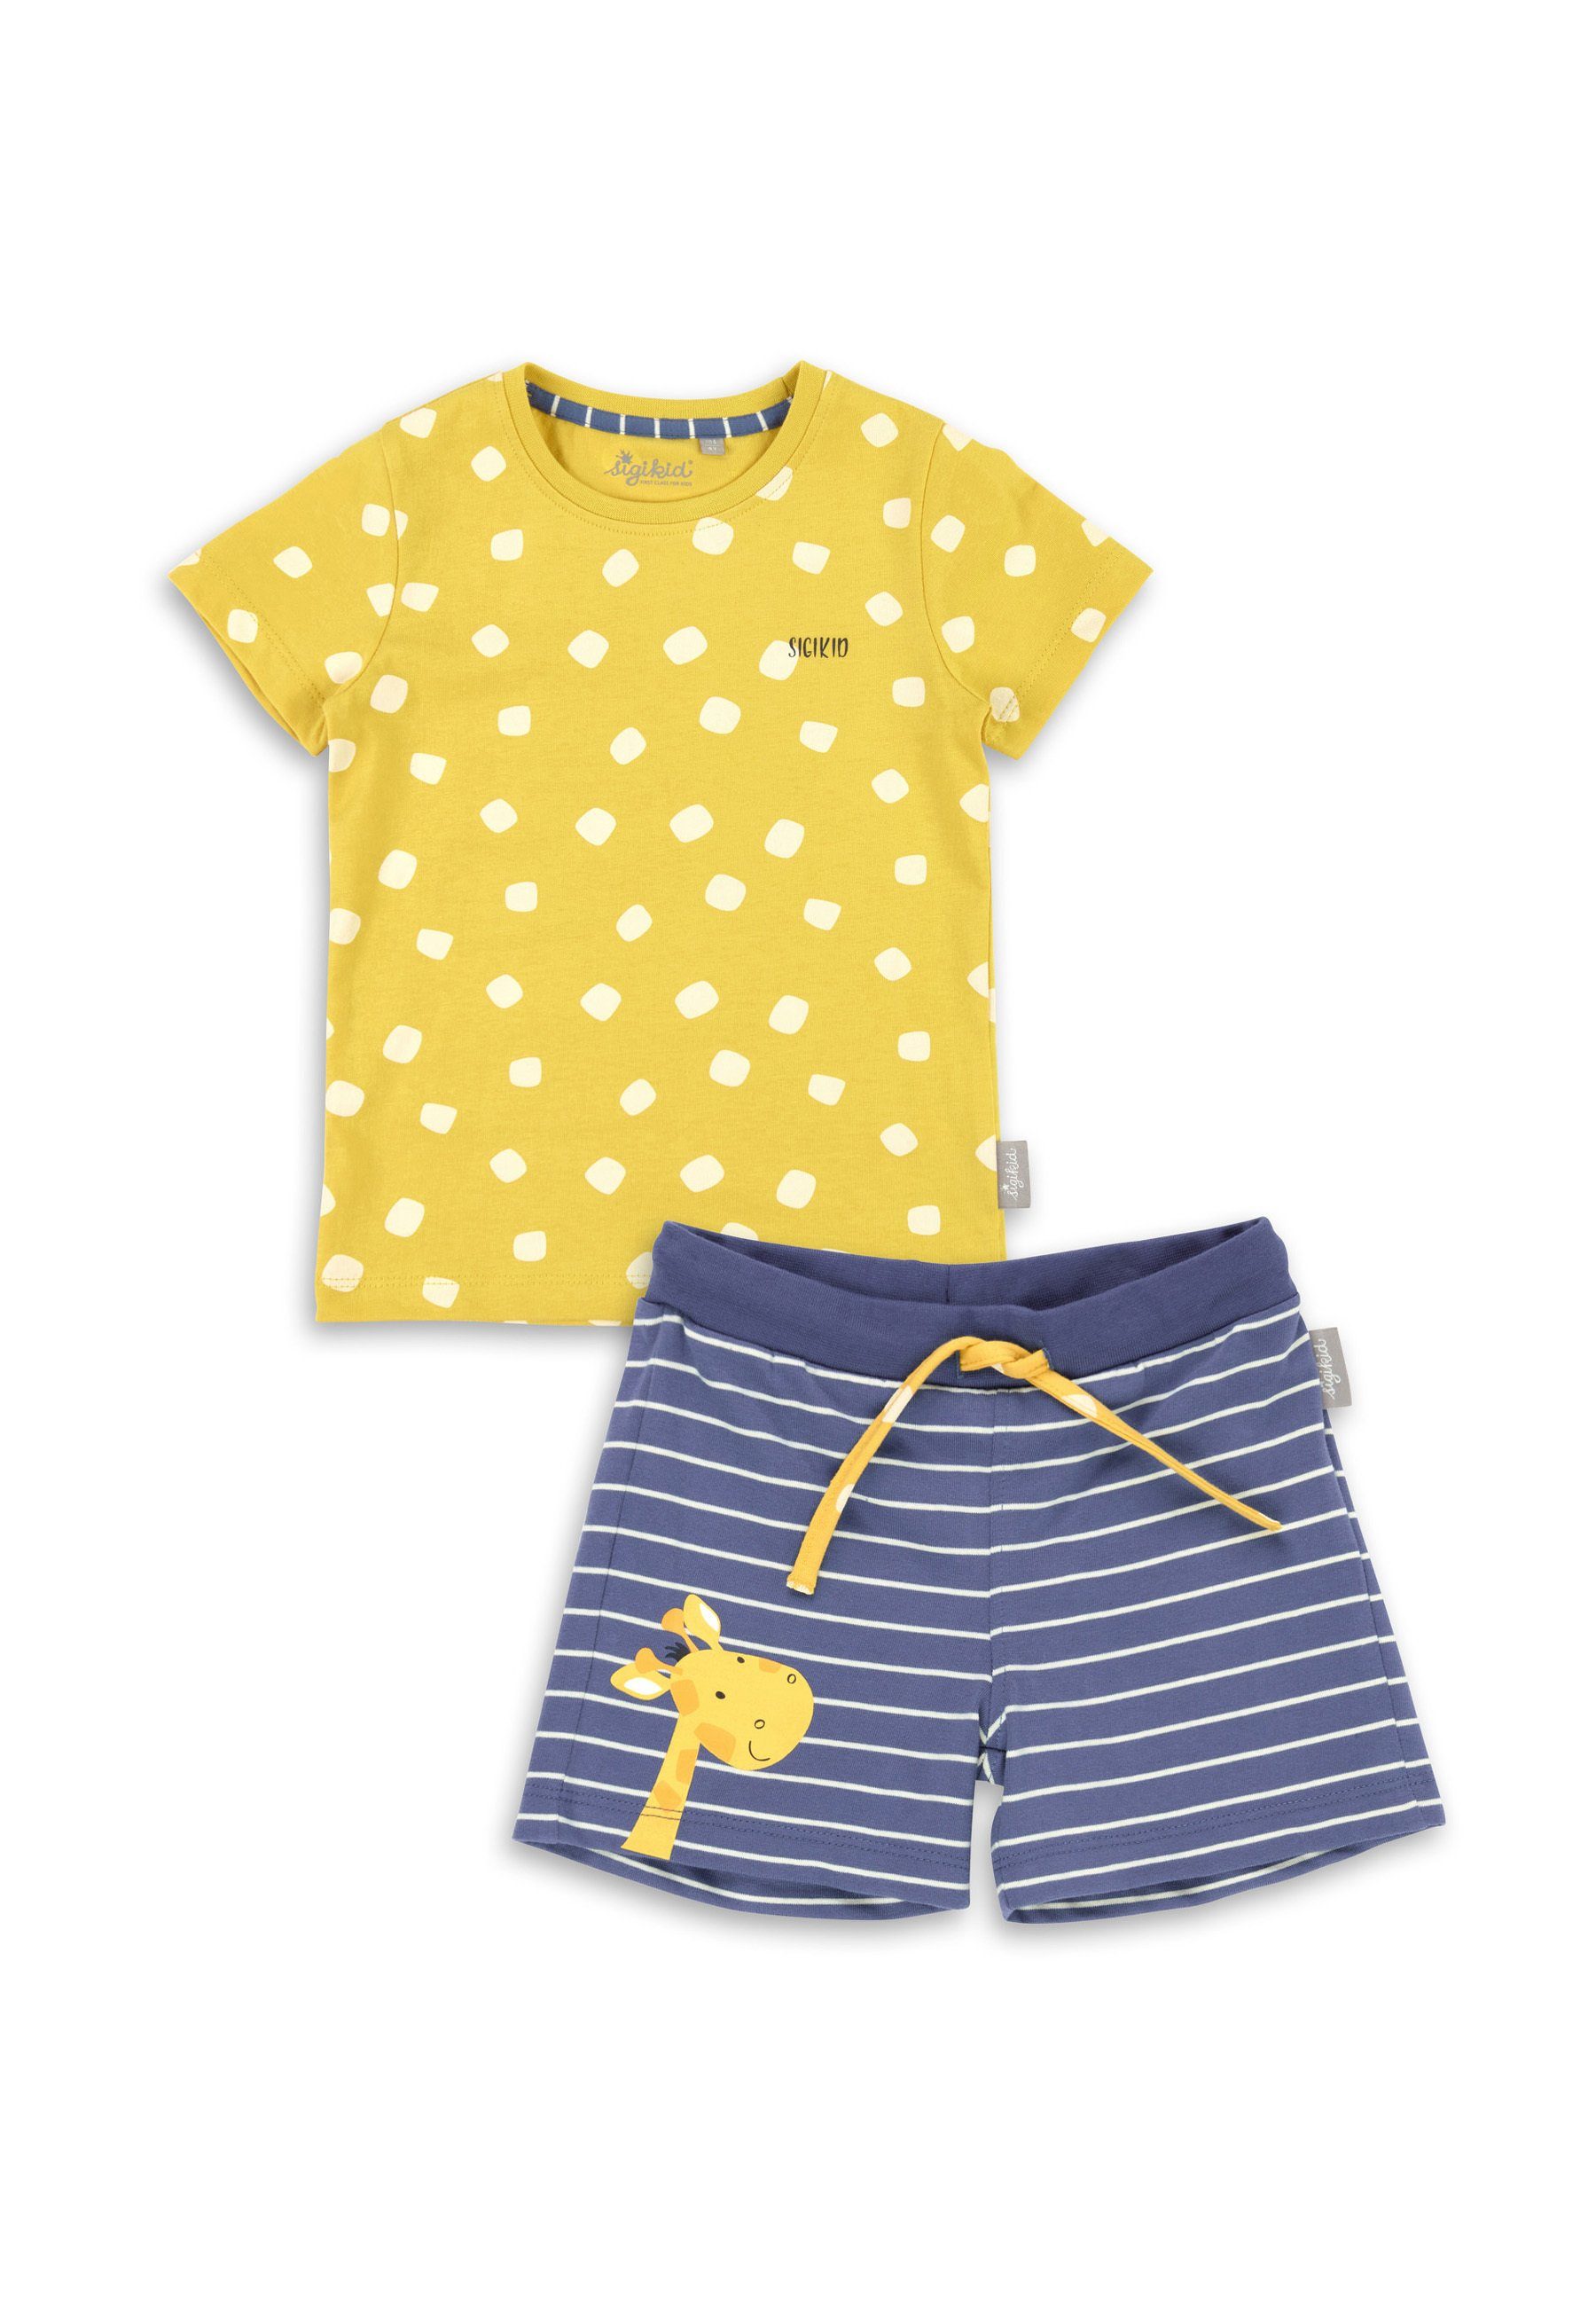 Sigikid Pyjama Kinder Nachtwäsche Pyjama (2 tlg) gelb/blau